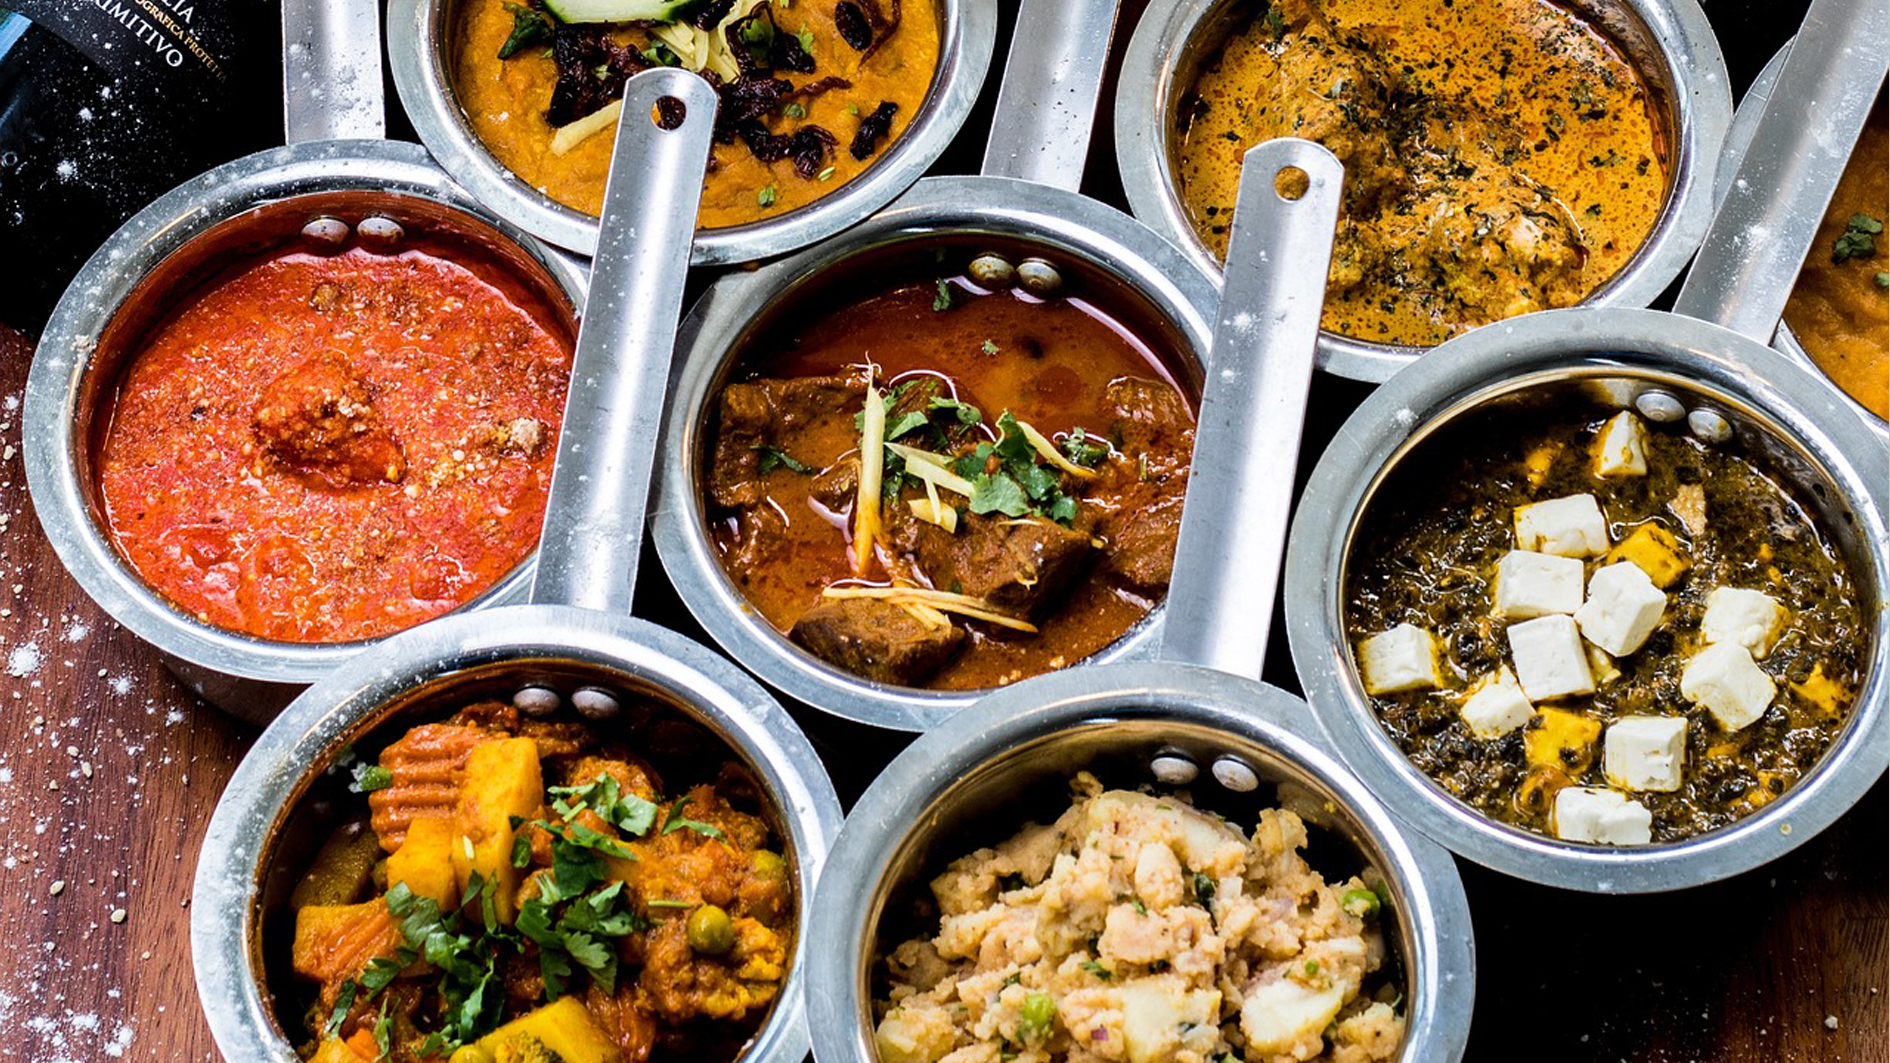 المزة الشرقية مع الأطباق الهندية الحل المثالي للتجمعات العائلية الكبيرة